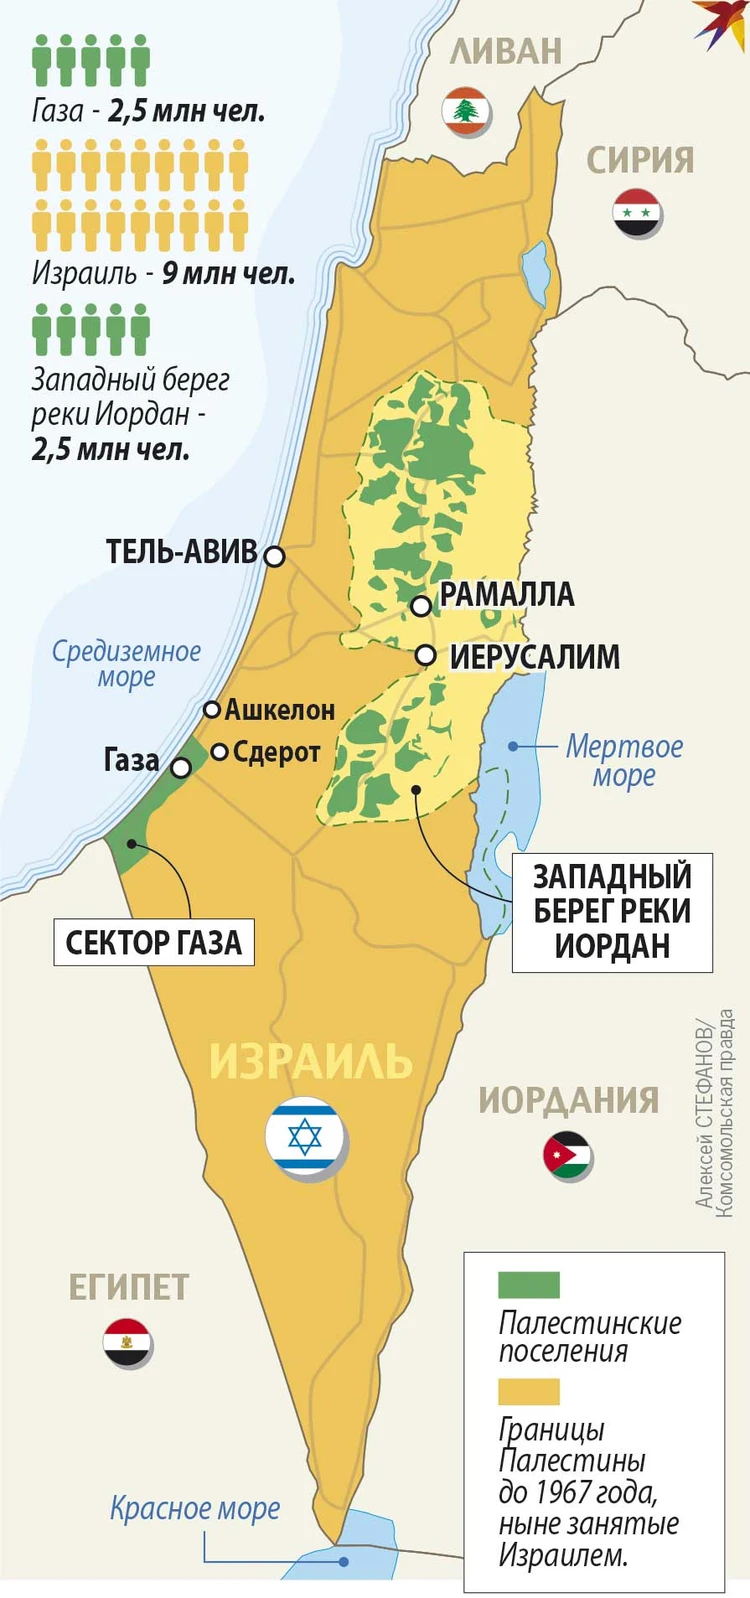 Палестина и Израиль на карте, история конфликта - KP.RU